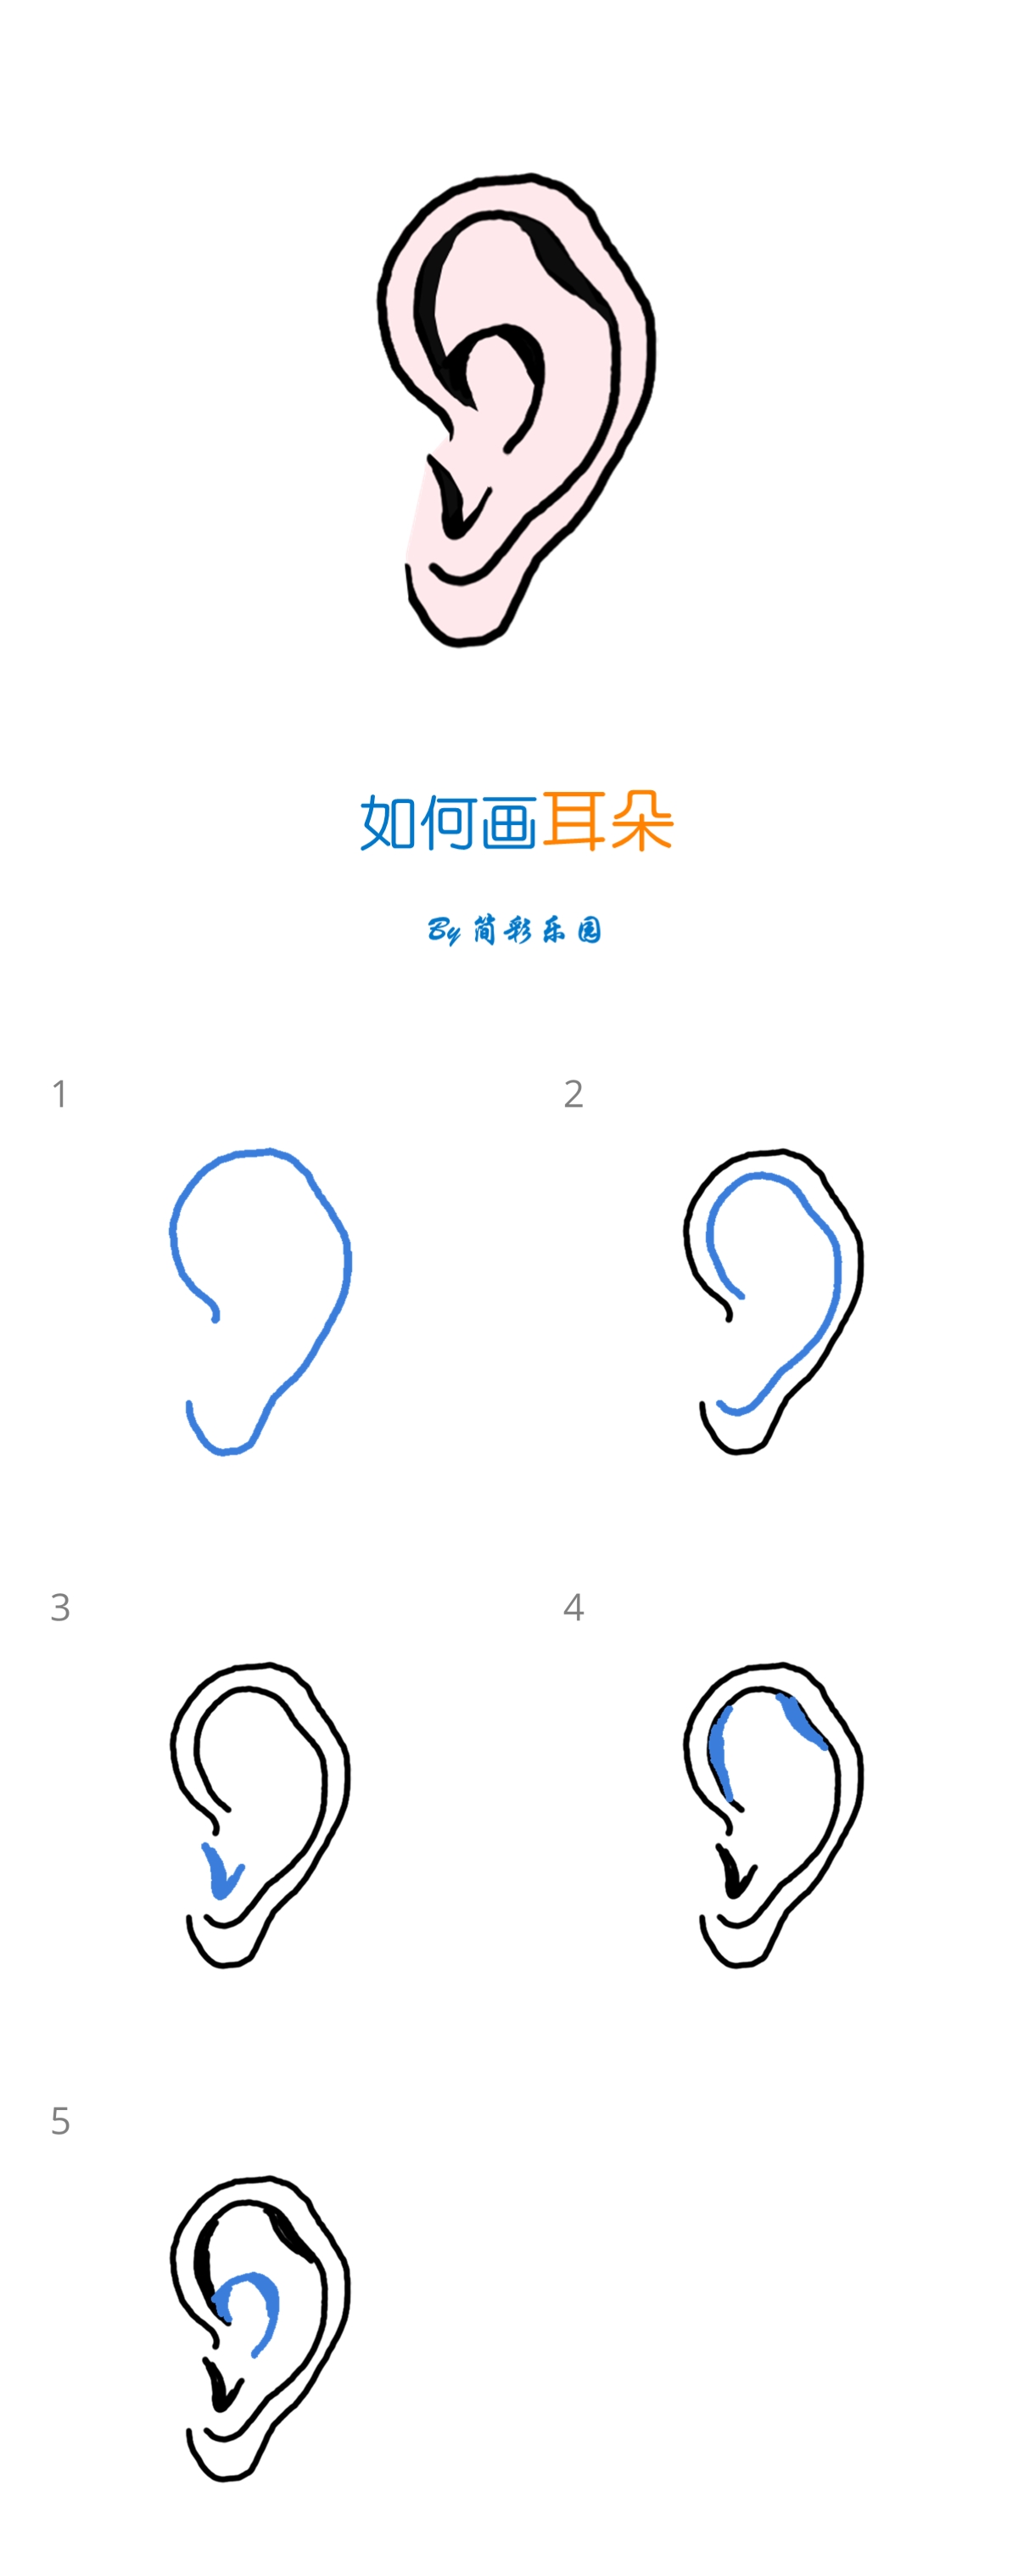 耳朵的简单画法 - 一分钟教你学会画耳朵简笔画